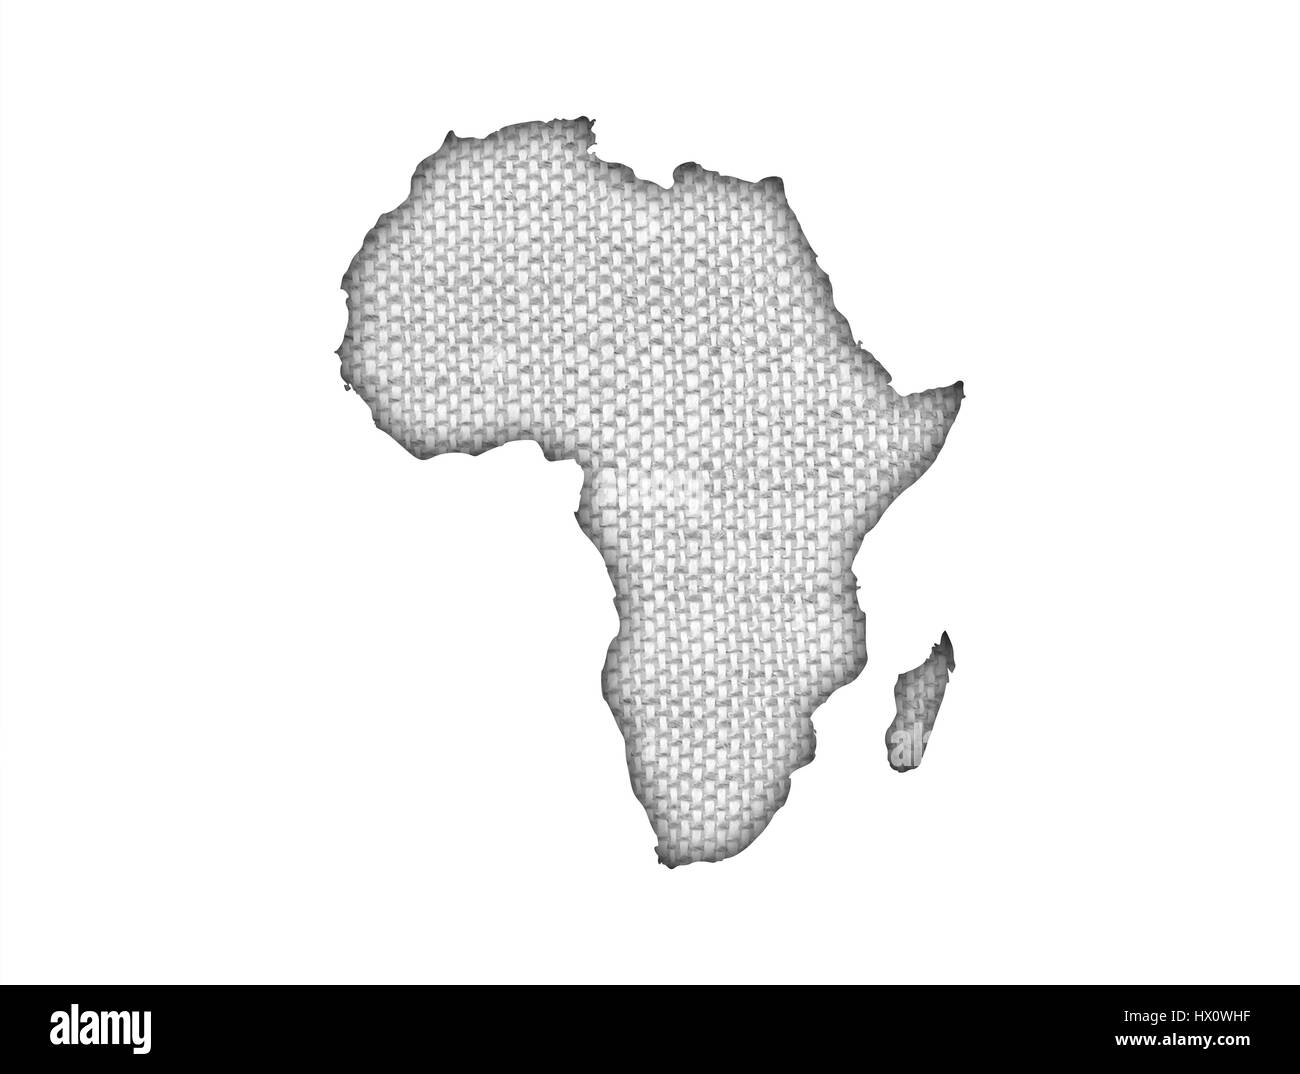 Carte de l'Afrique sur de vieux linge de maison Banque D'Images